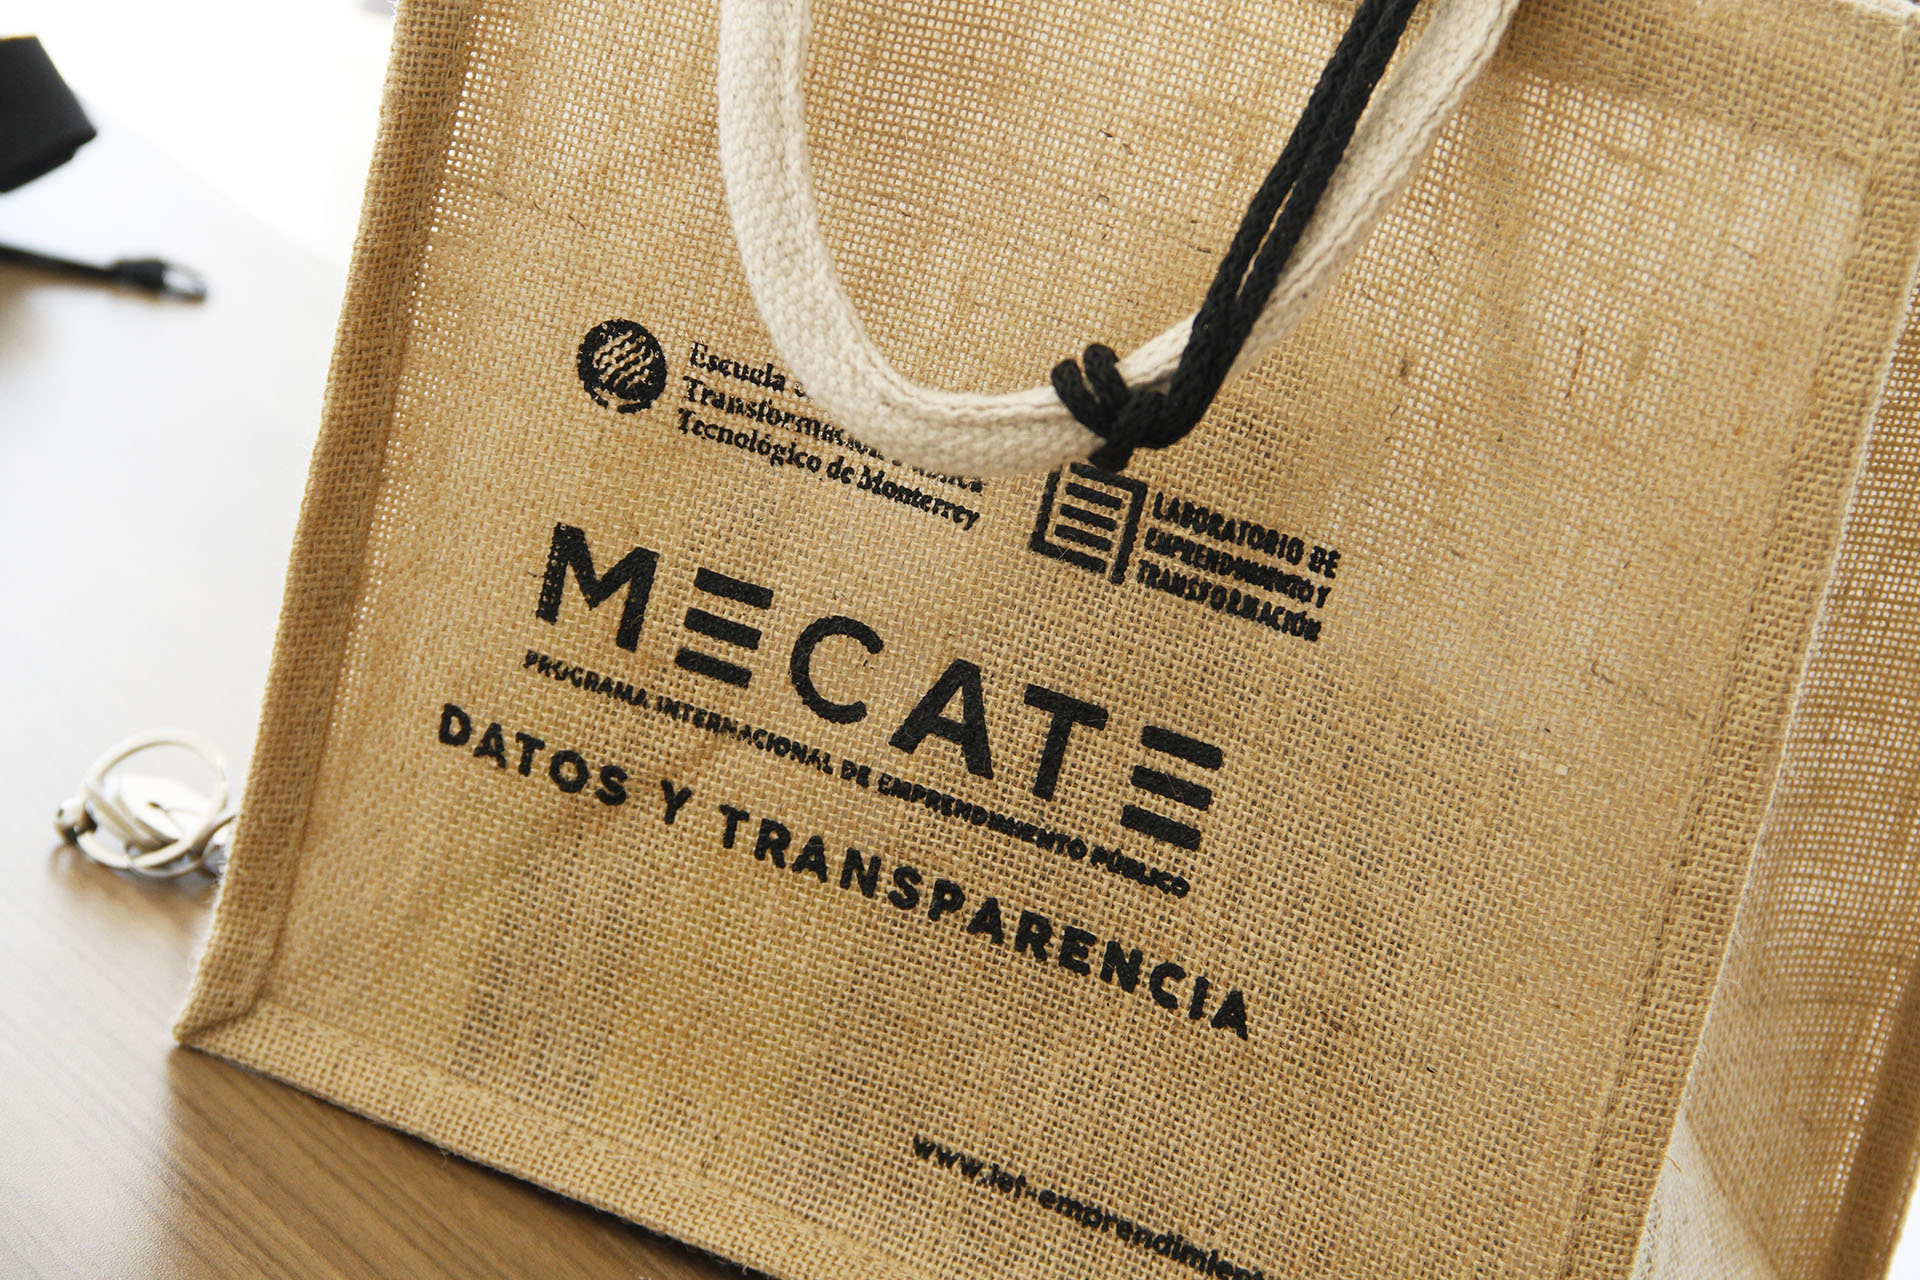 3 proyectos para combatir la corrupción fueron propuestos en MECATE.